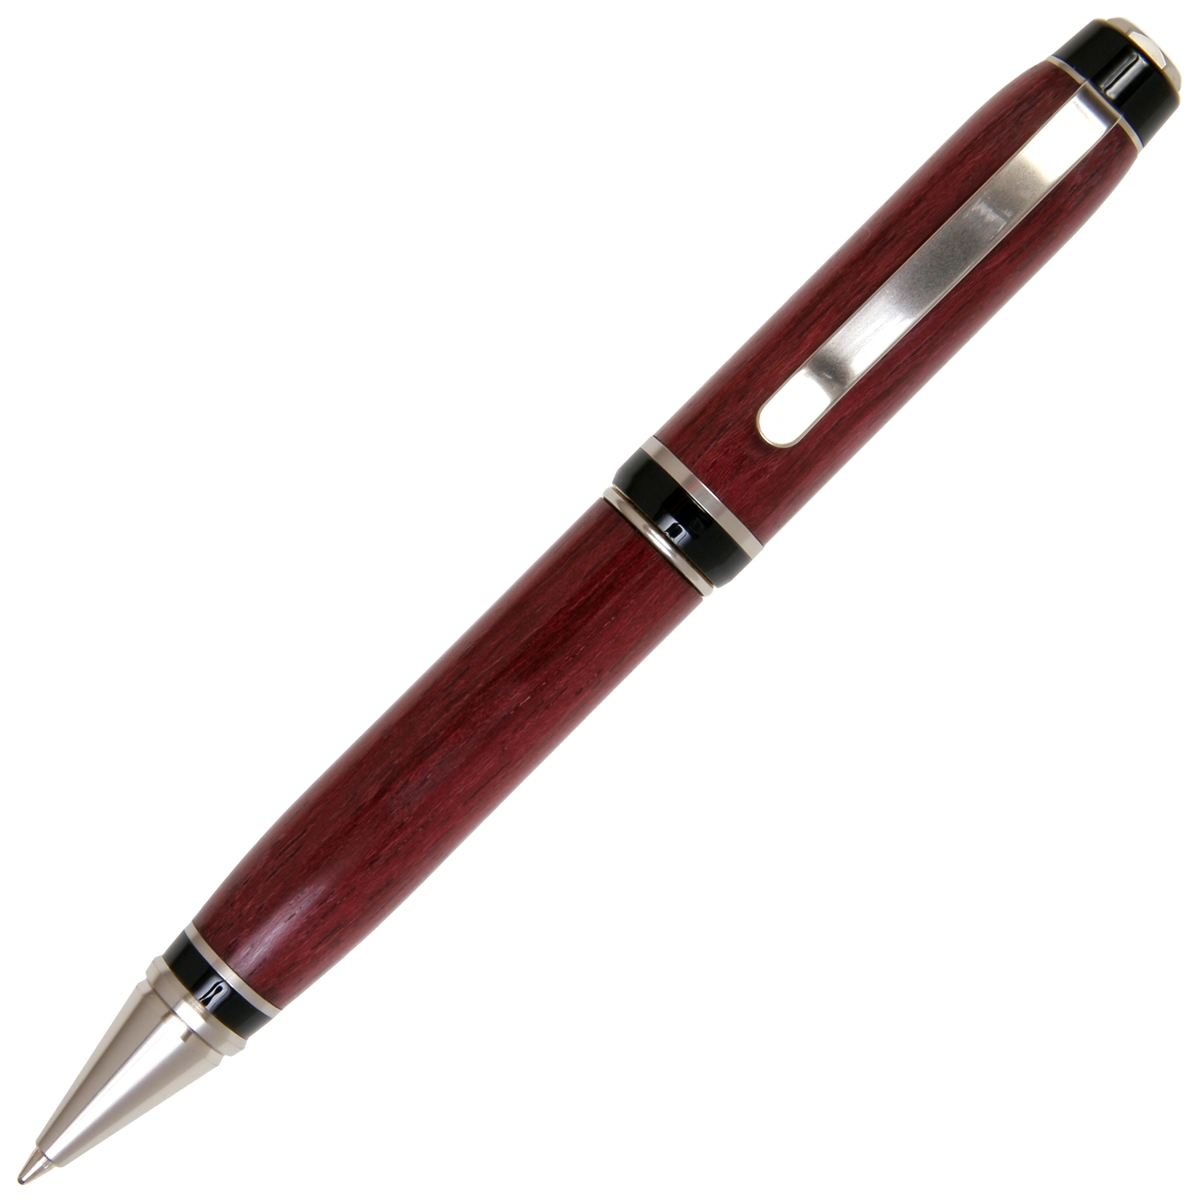 Purpleheart Cigar Twist Pen - Lanier Pens